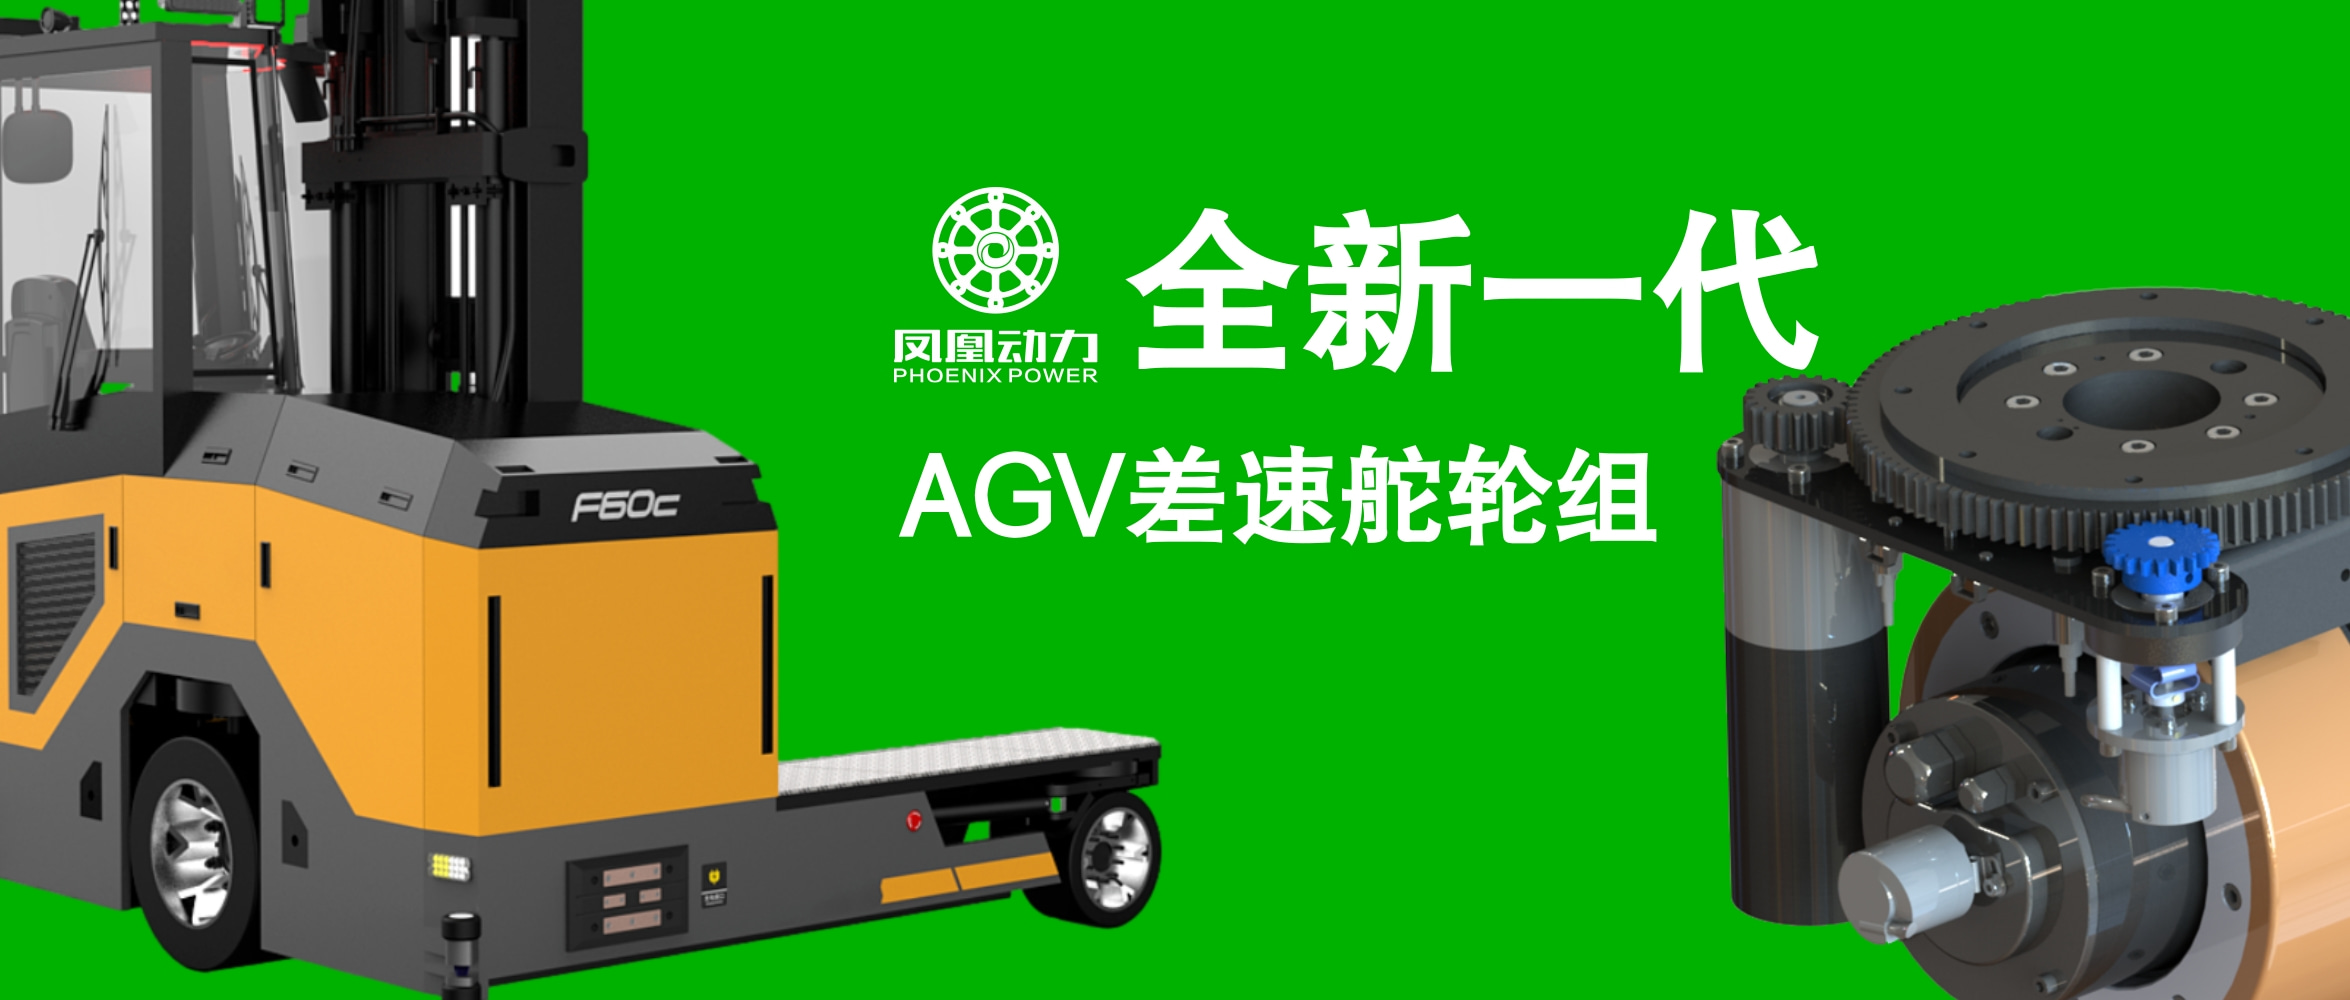 凤凰动力全新一代AGV差速舵轮组,赋能AGV小车提升使用效能